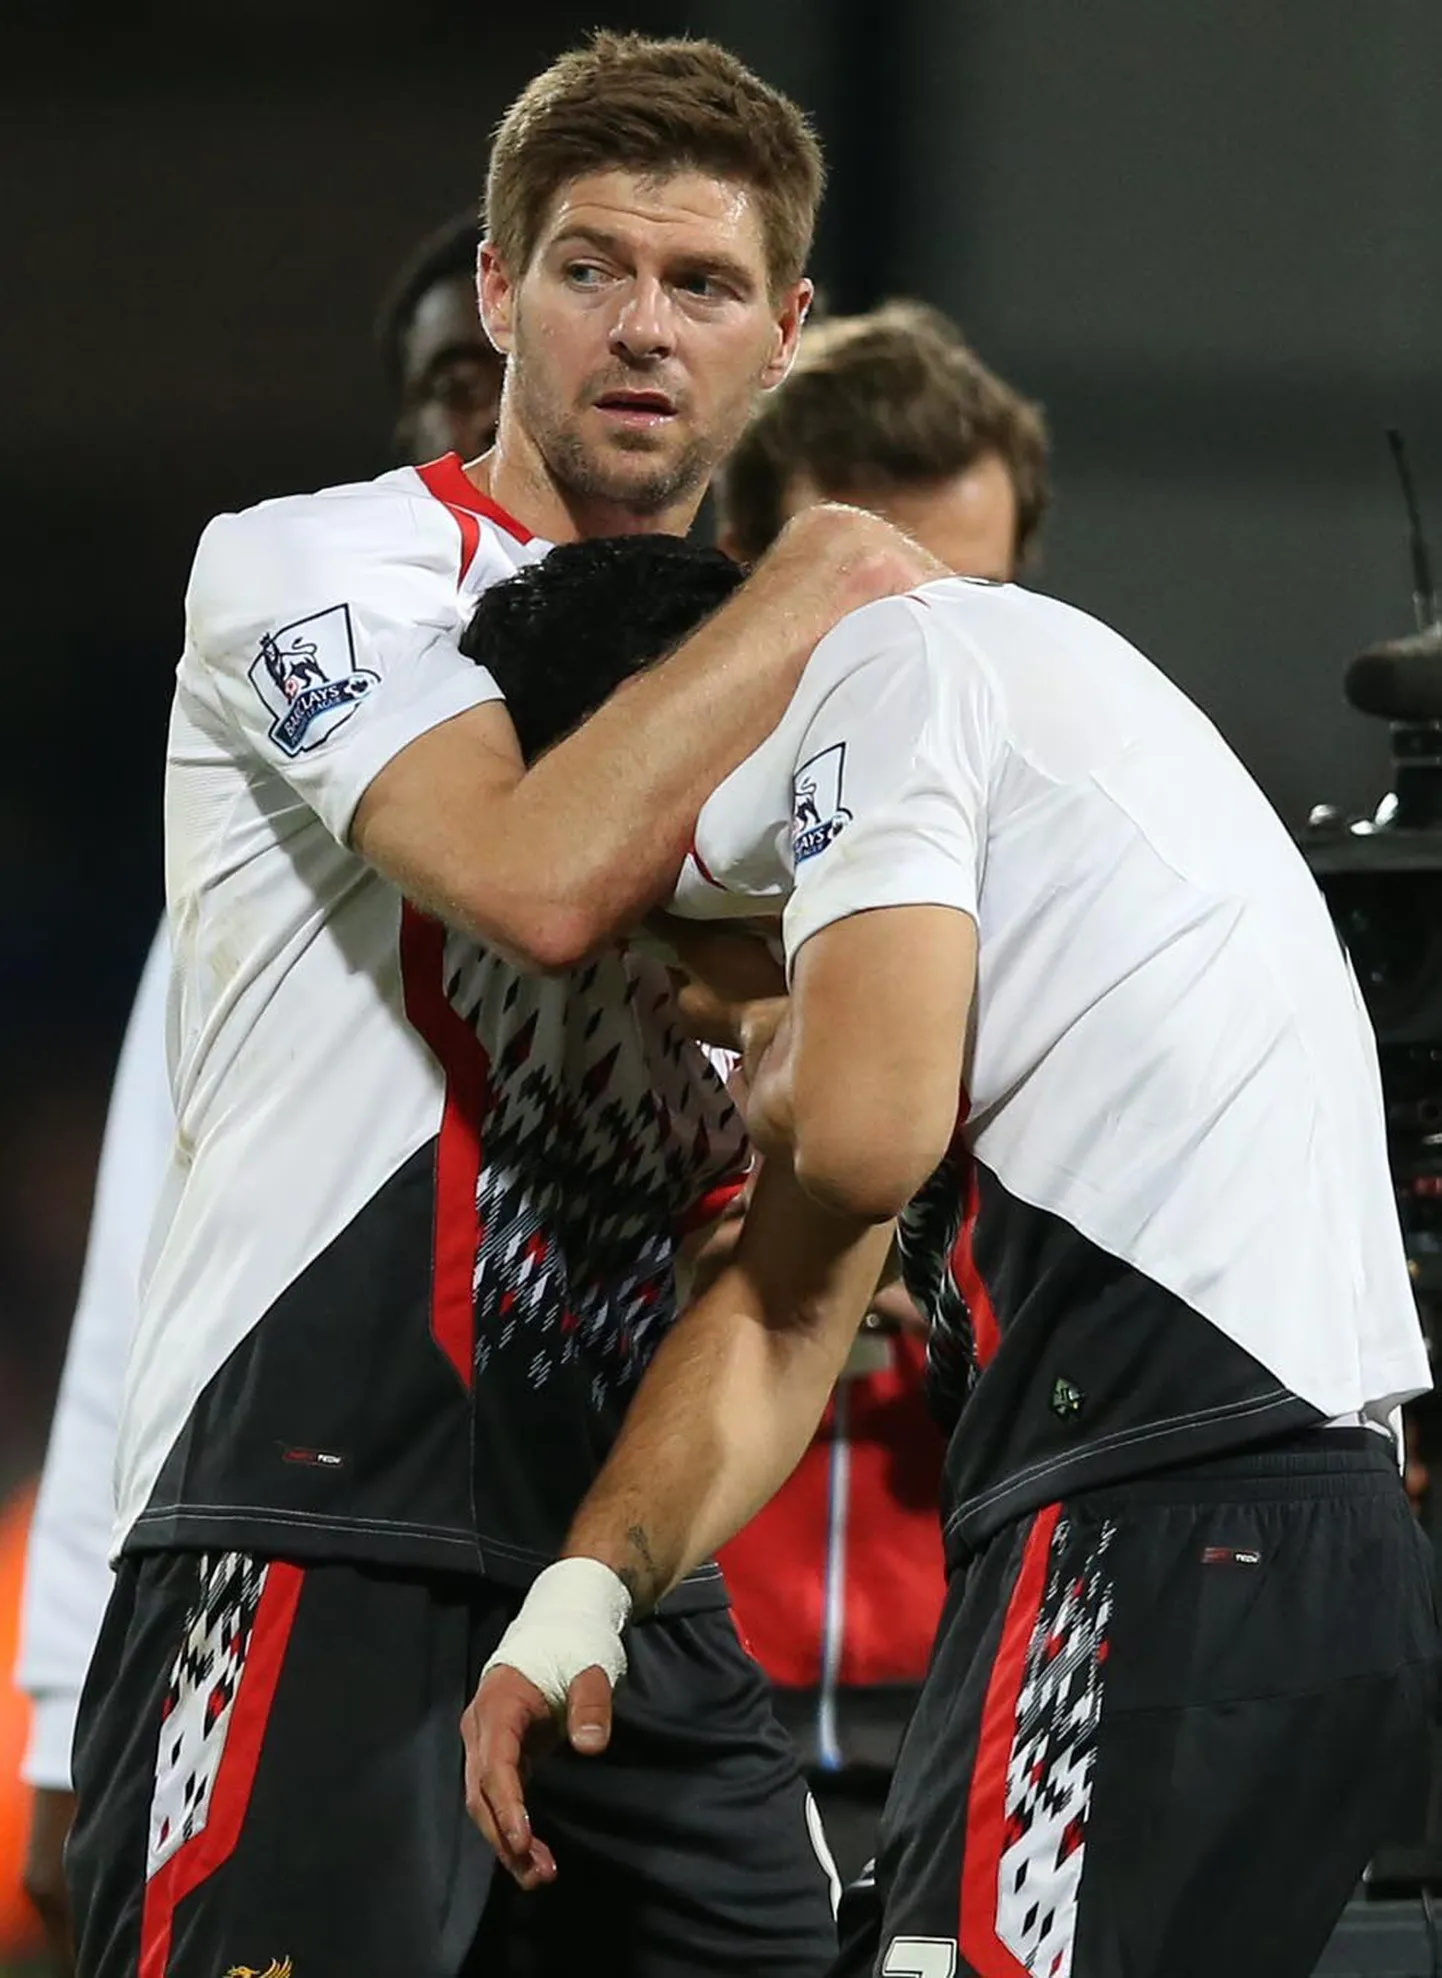 Steven Gerrardi (vasakul) näost on näha pettumust, Luis Suarez (paremal) ei tahtnud pärast kaotust oma emotsioone kordagi näidata.